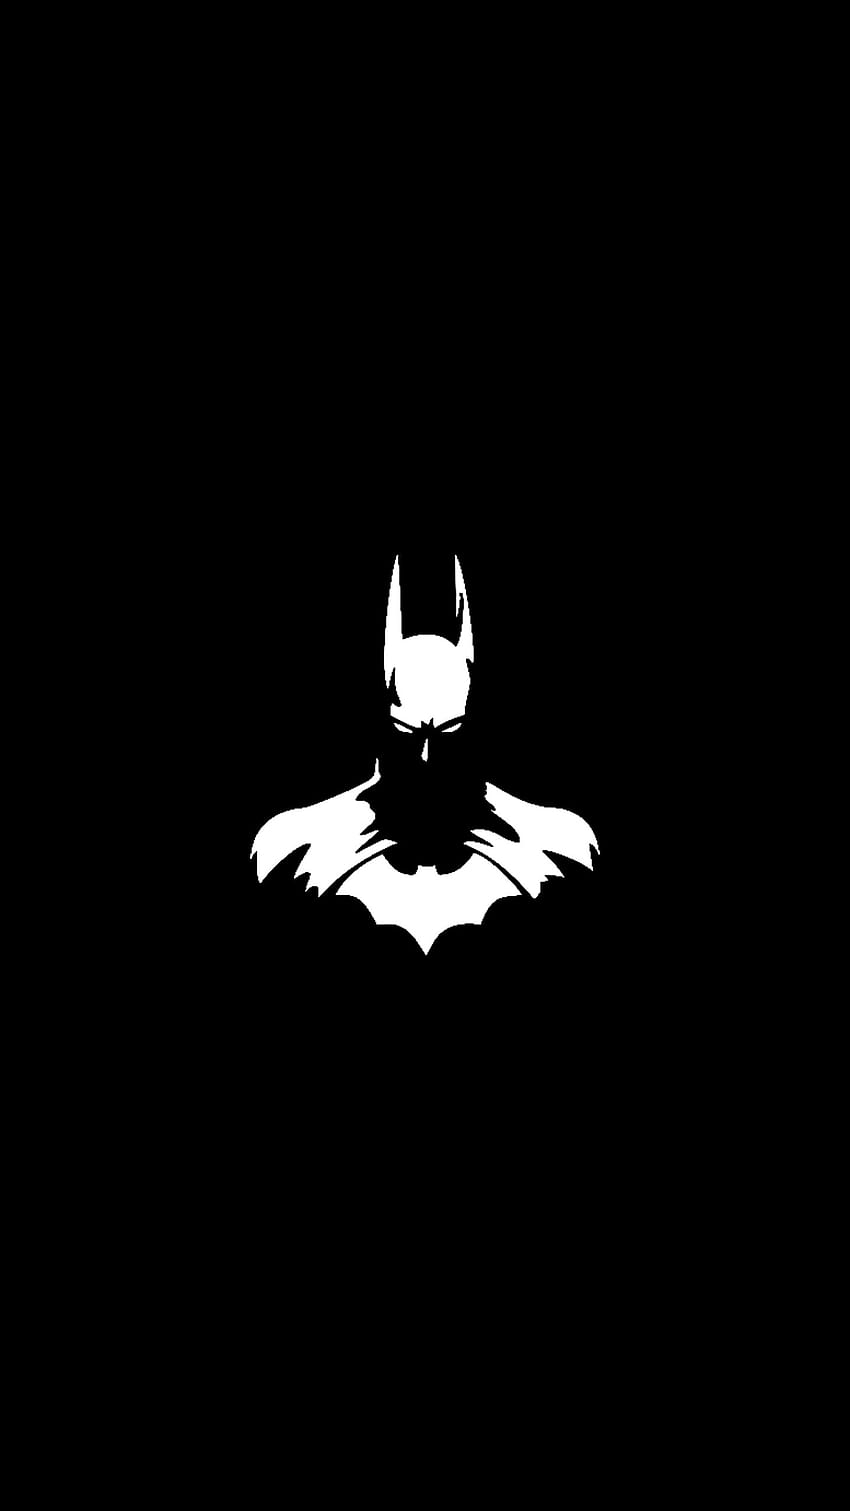 Sự tự tin và quyết liệt của Batman được tái hiện trong hình nền Dark Batman wallpaper này. Những chi tiết đen trắng đậm nét sẽ mang đến cho bạn sự độc đáo và cá tính. Tận hưởng những hình ảnh cực kì ấn tượng này và thể hiện phong cách của riêng bạn!